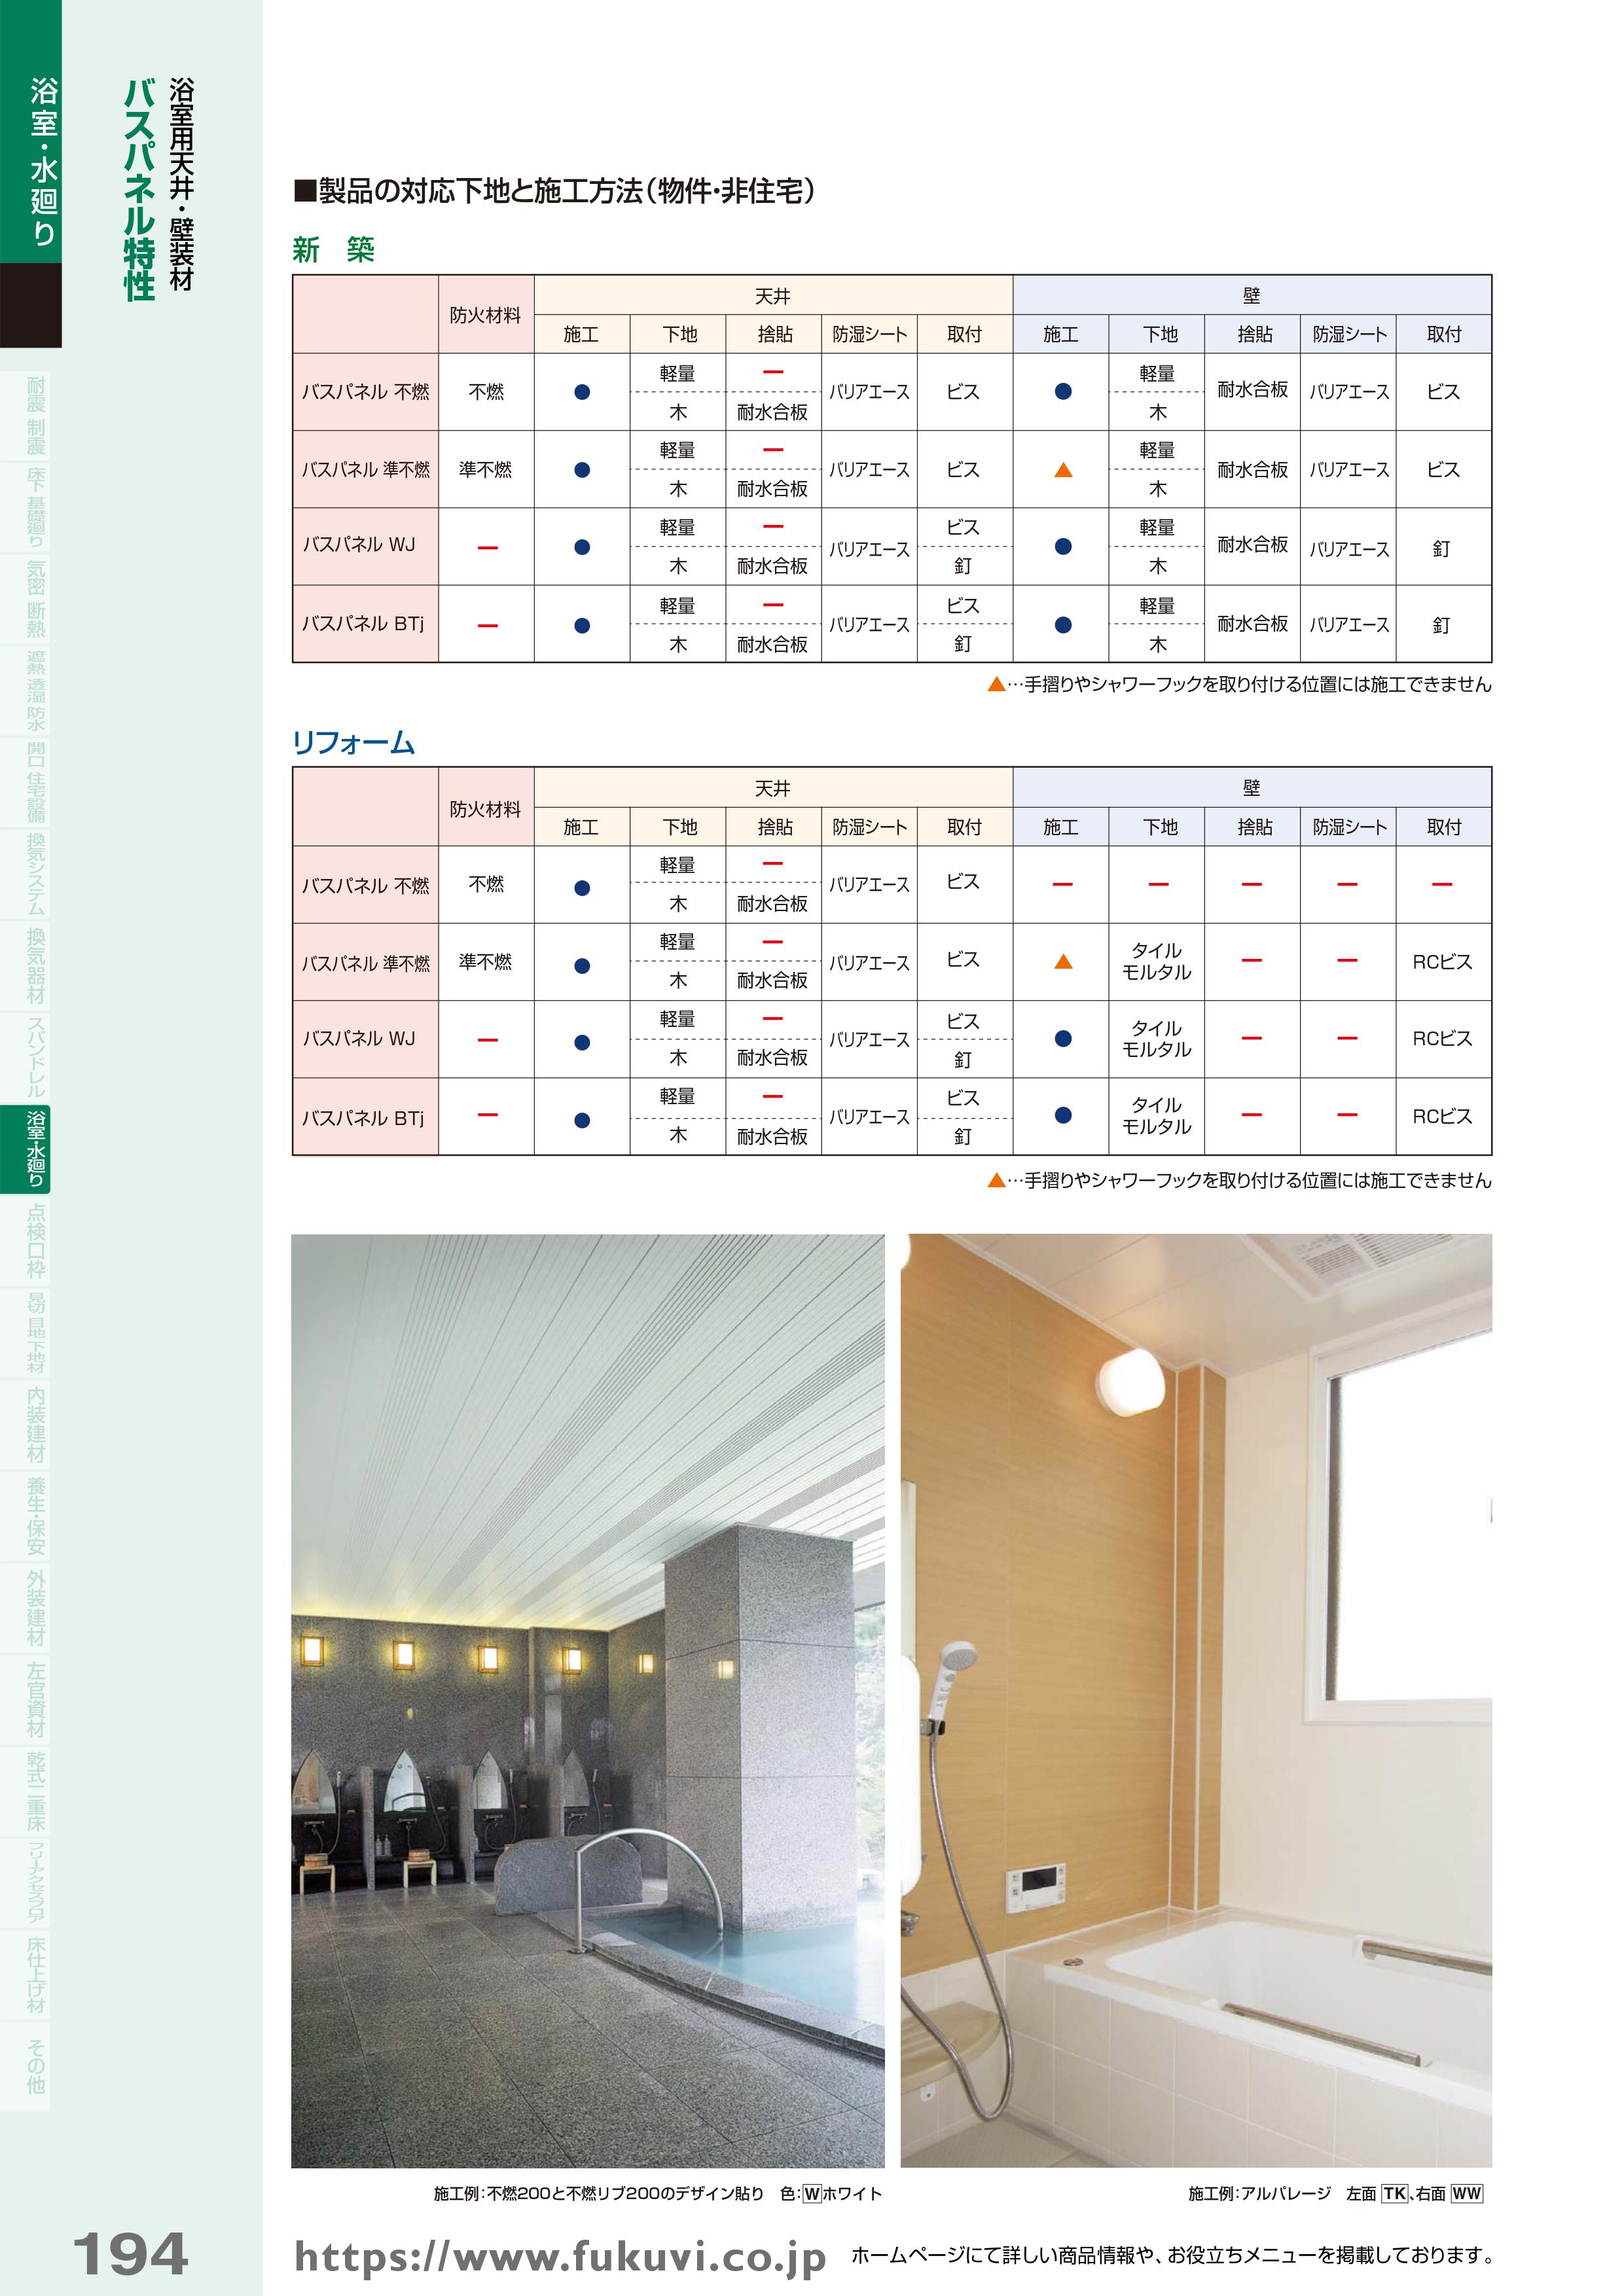 浴室用天井・壁装材バスパネル特性